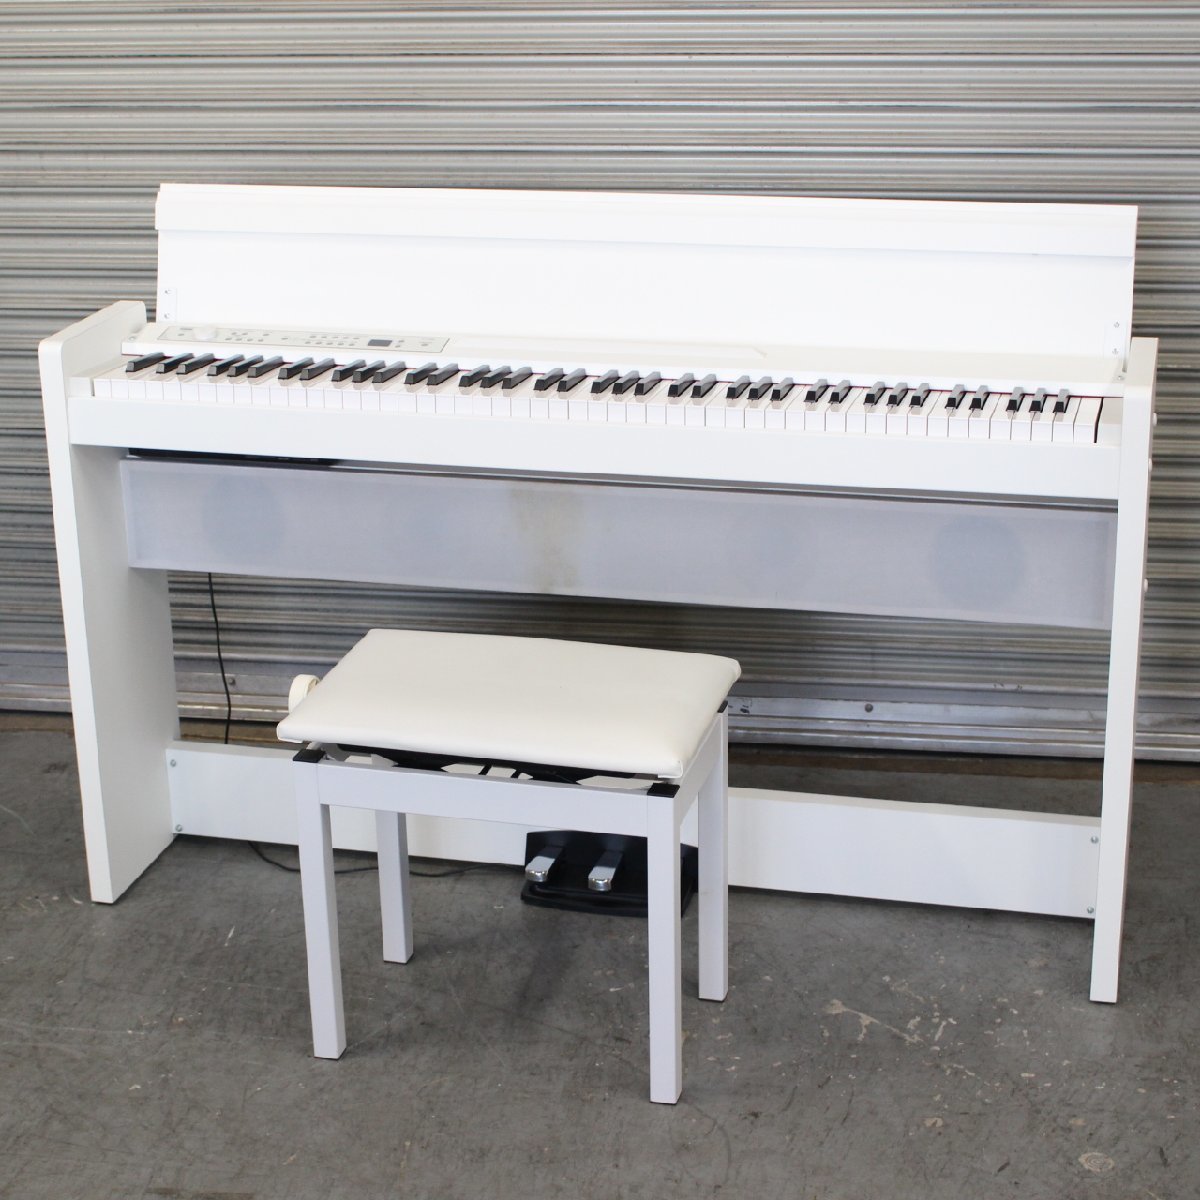 川崎市多摩区にて コルグ 電子ピアノ LP-380 2019年製 を出張買取させて頂きました。